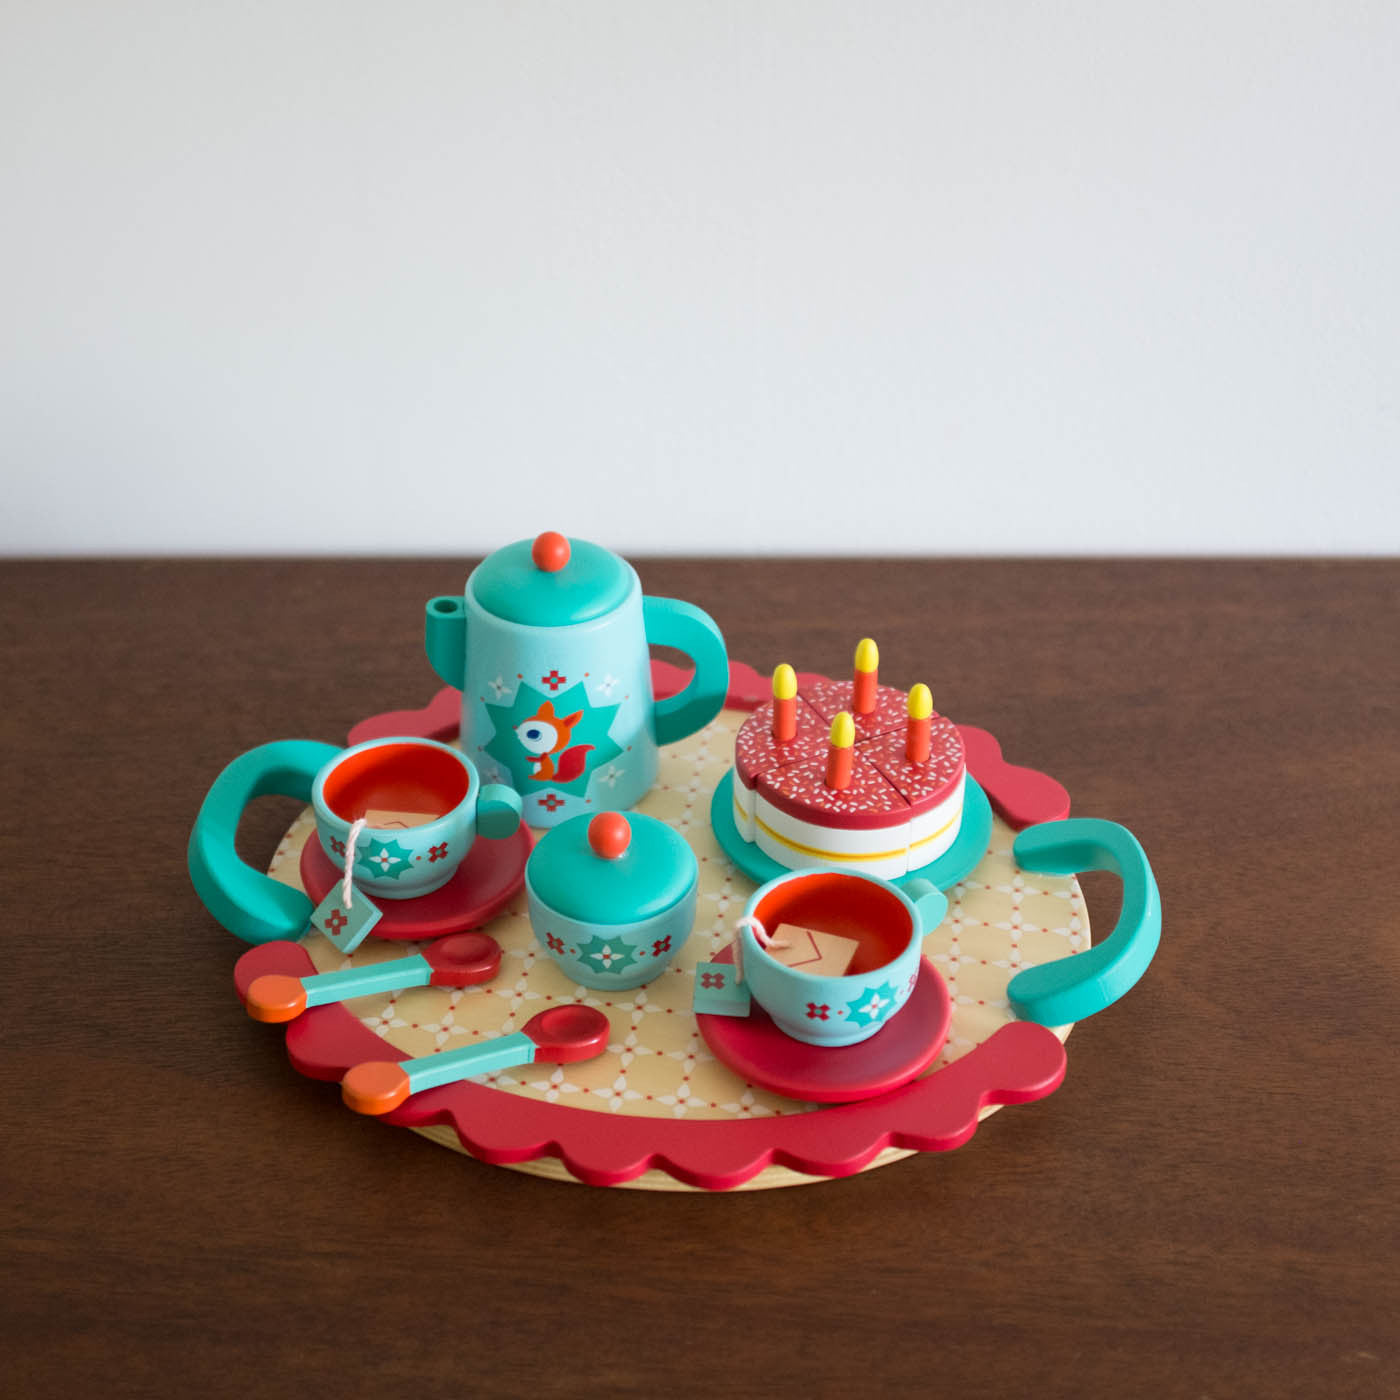 Tea Party Wooden Toy Set - Fox